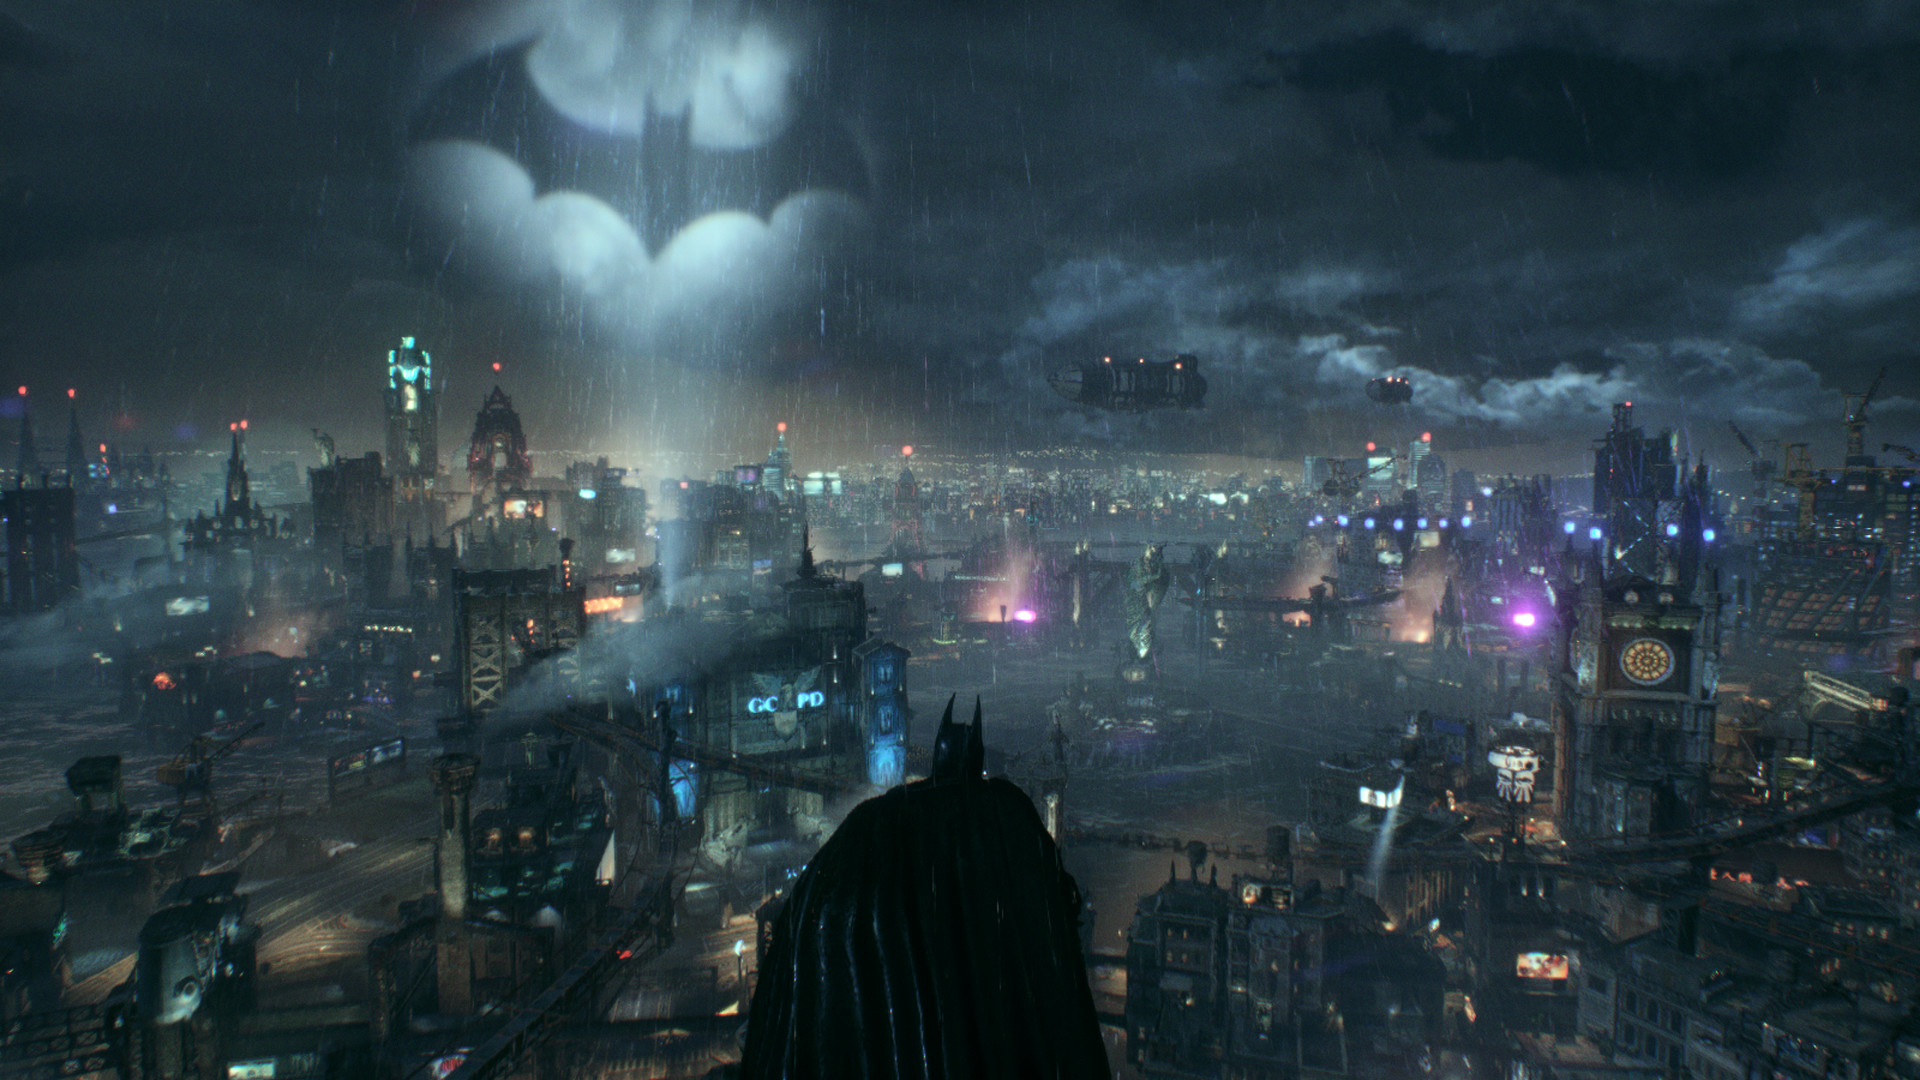 Gotham City Background 62 images